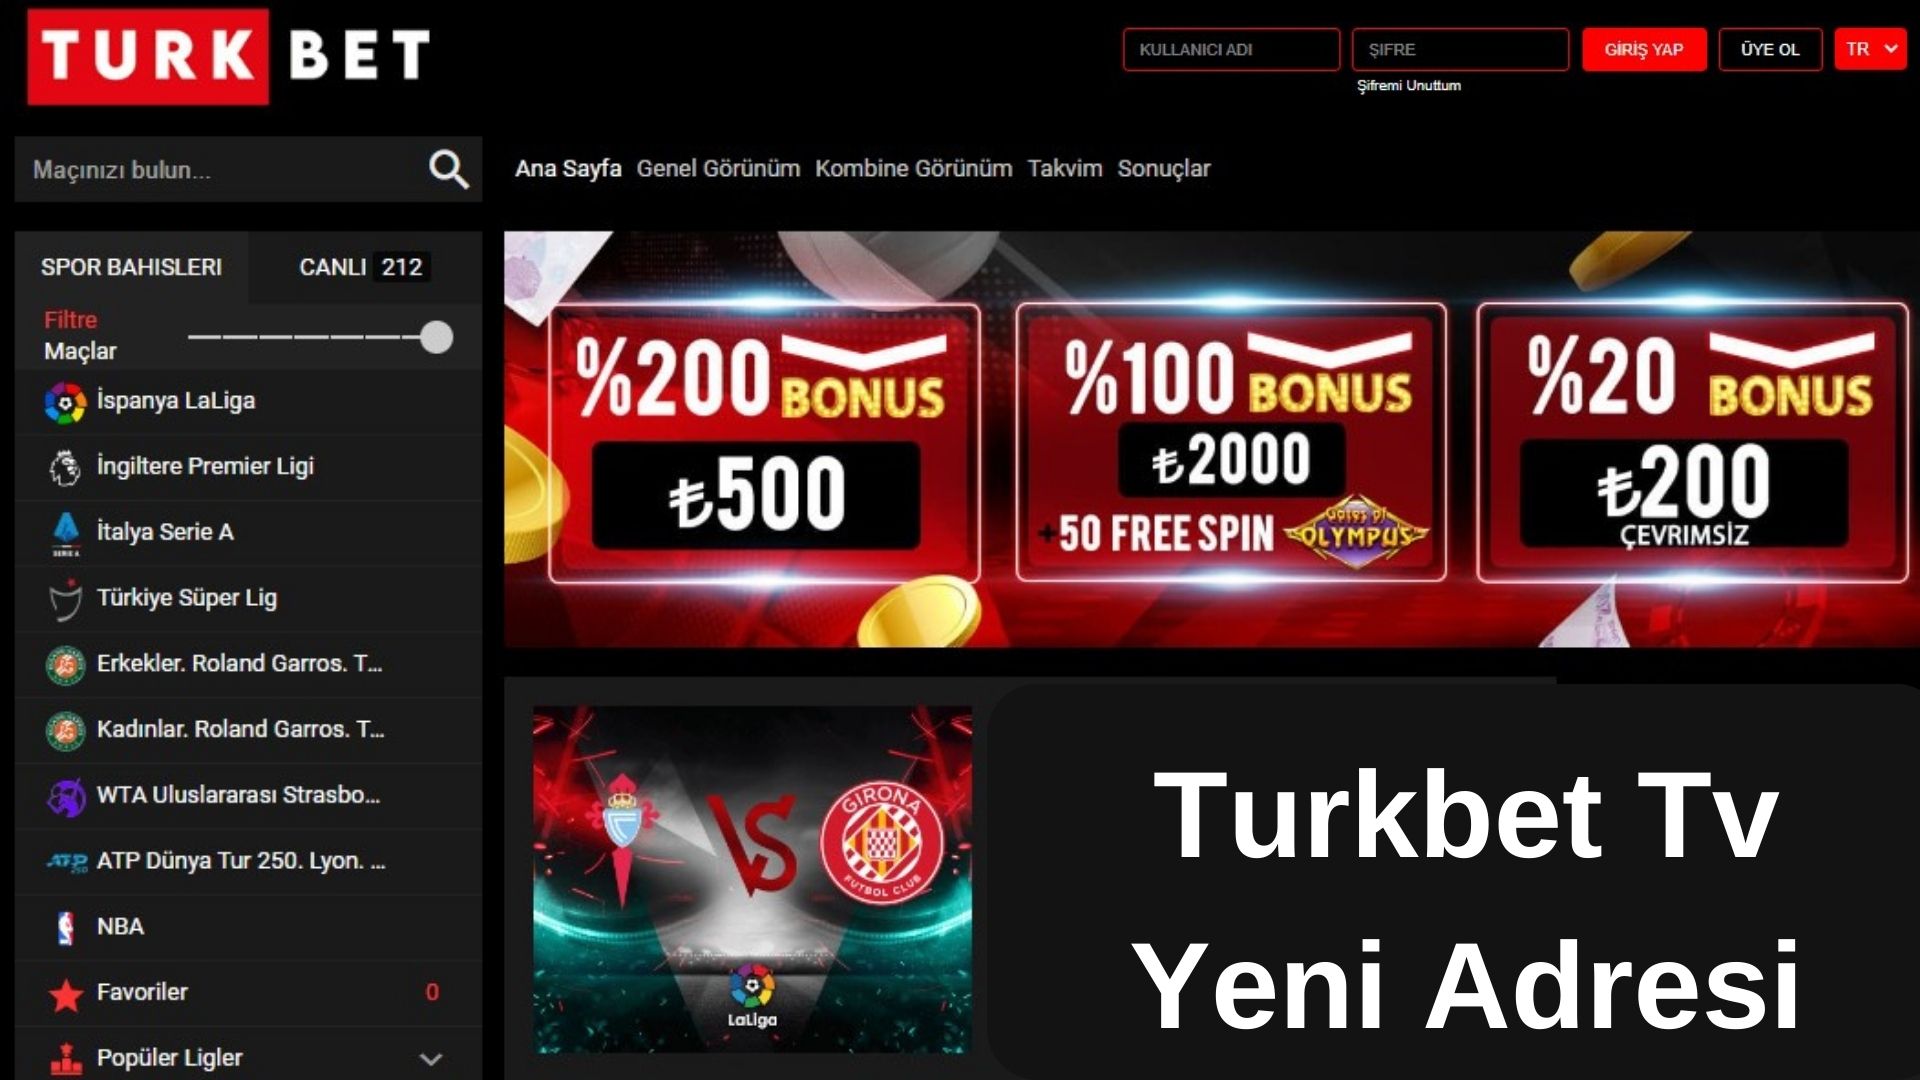 Turkbet Tv Yeni Adresi